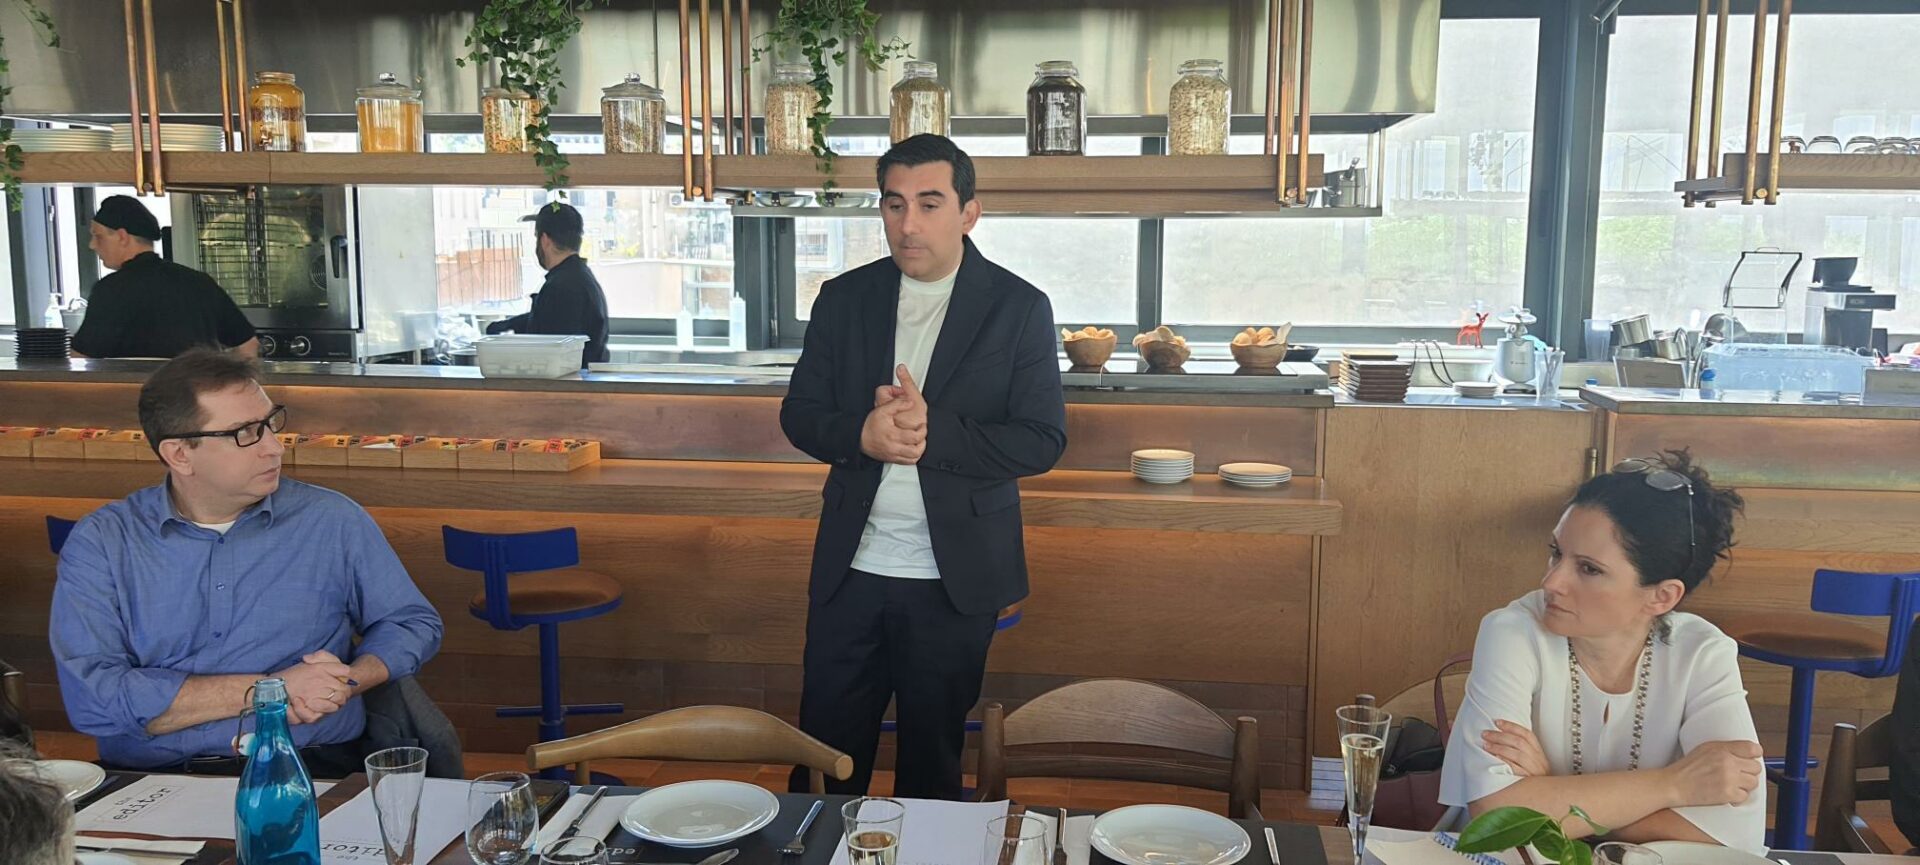 Kύριος με κοστουμι μιλάει σε κόσμο μπροστά από ένα τραπέζι με πιάτα